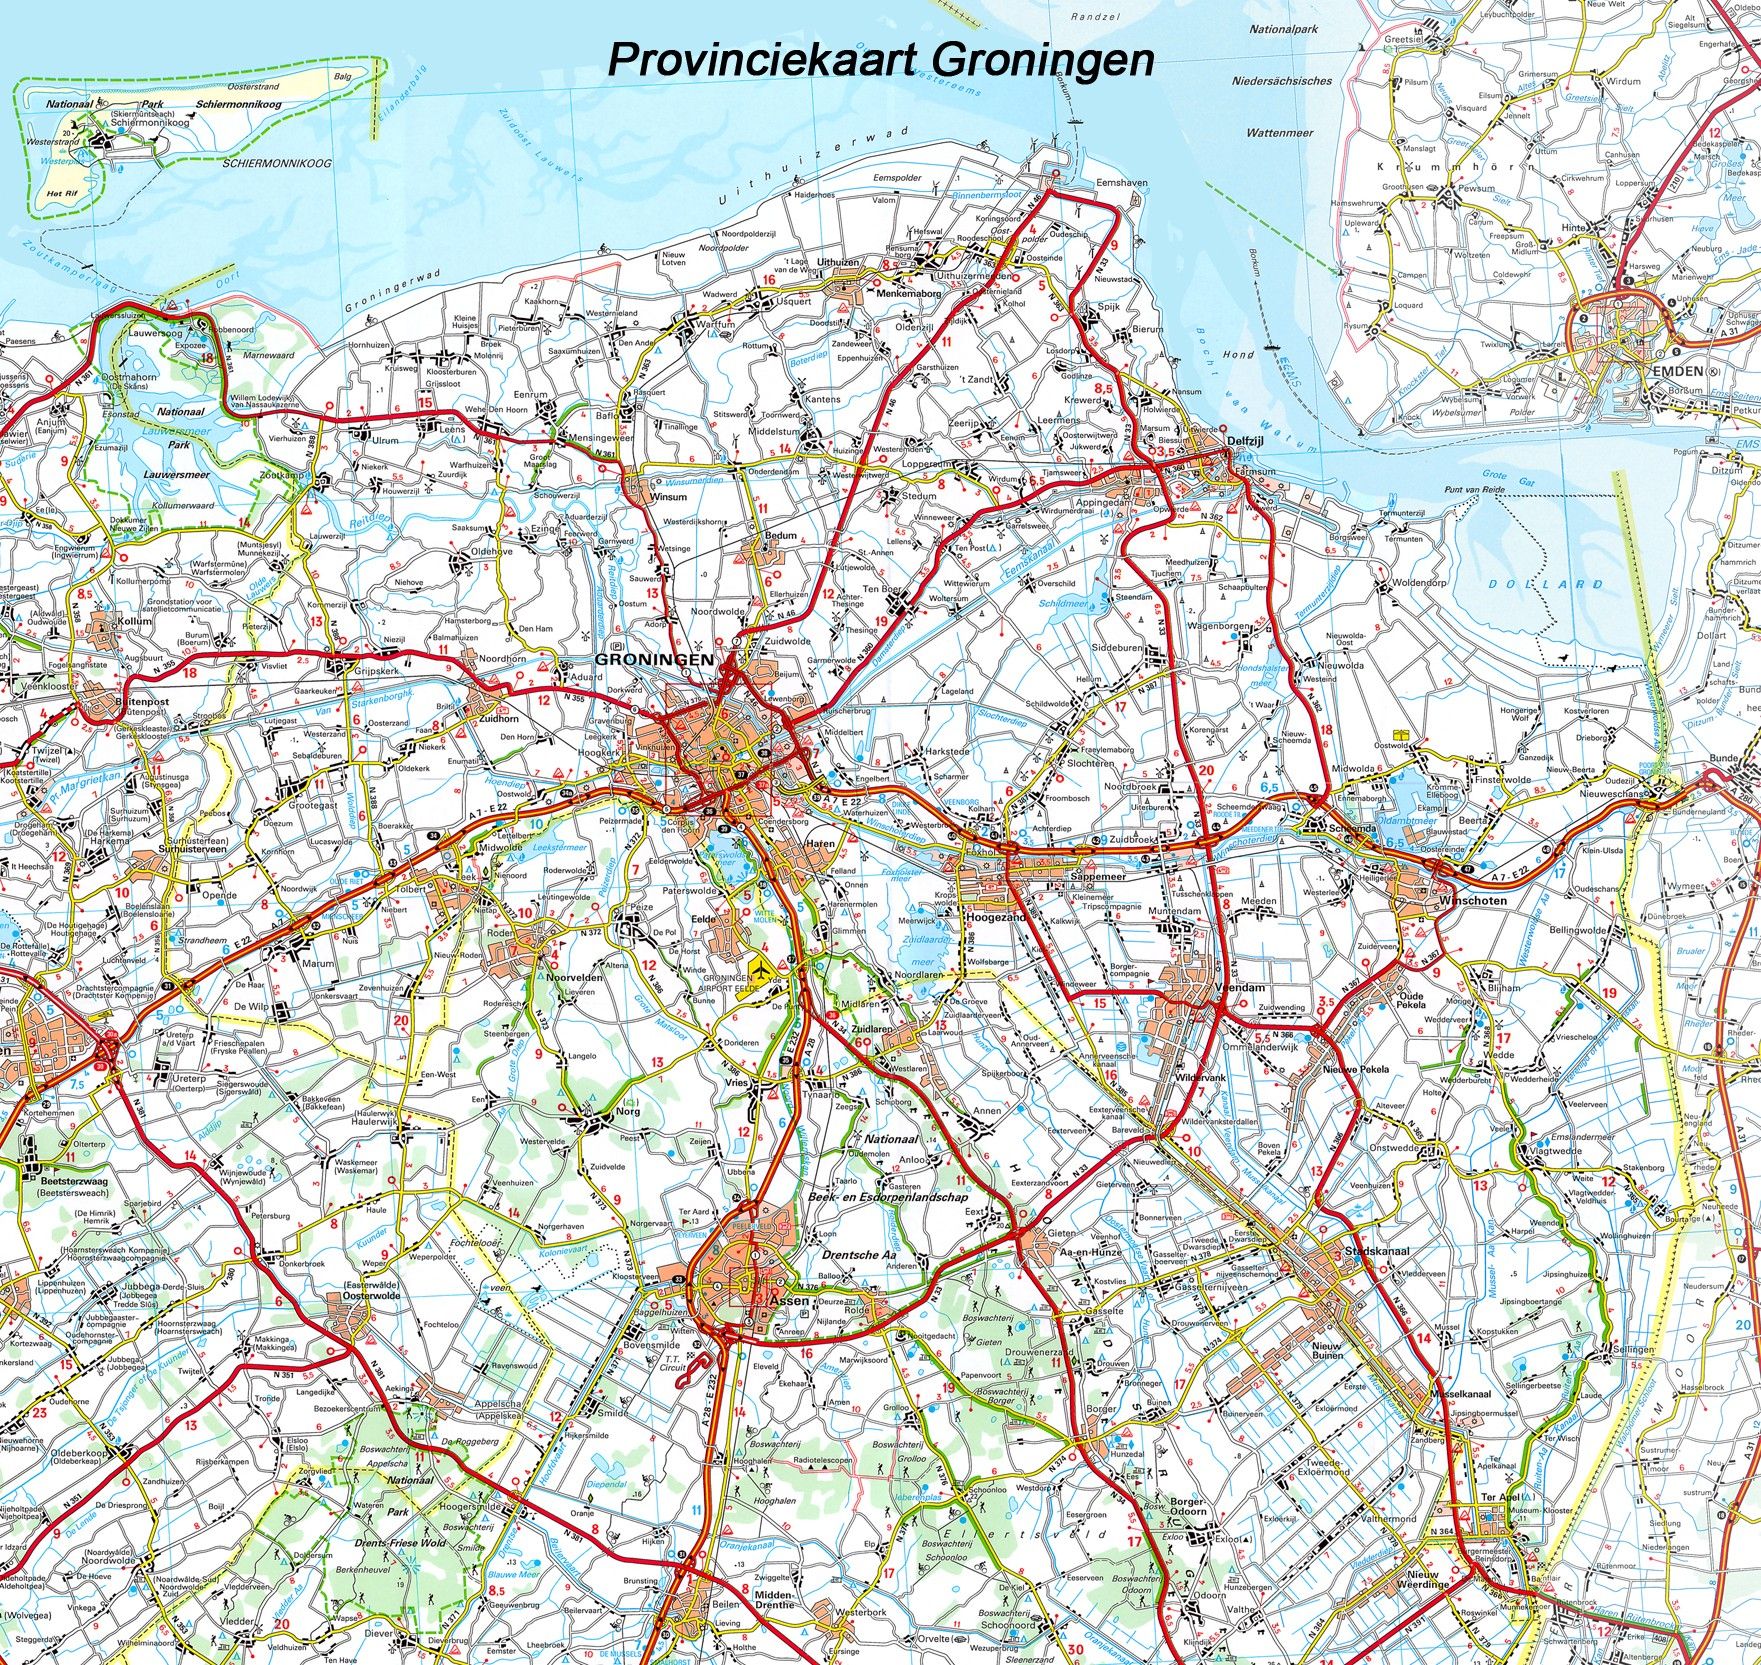 Provincie kaart Groningen 1:100.000